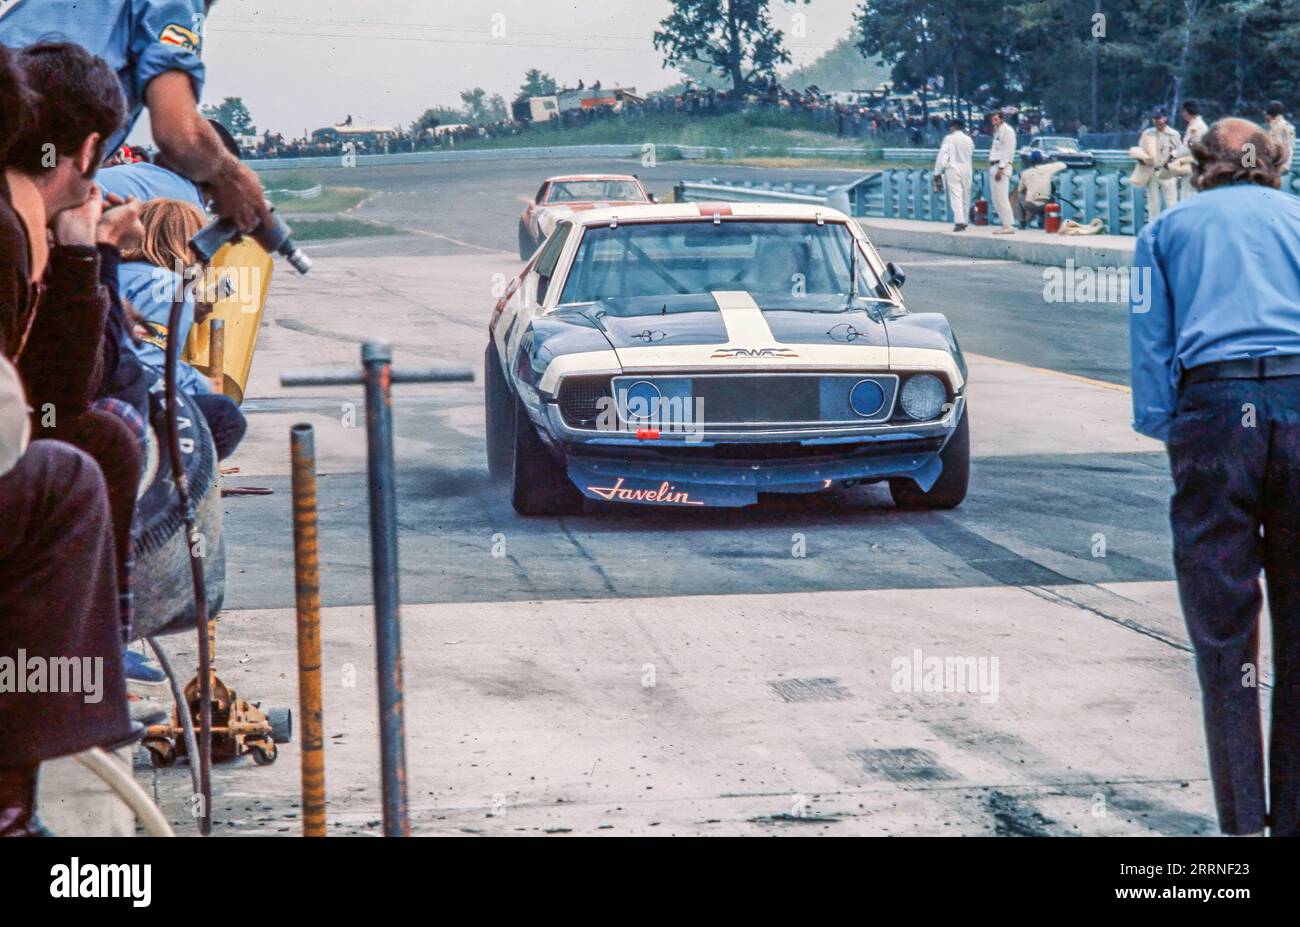 1972 Watkins Glen Trans Am, George Follmer, AMC Javelin, ont commencé 2e, terminé 1e. Banque D'Images